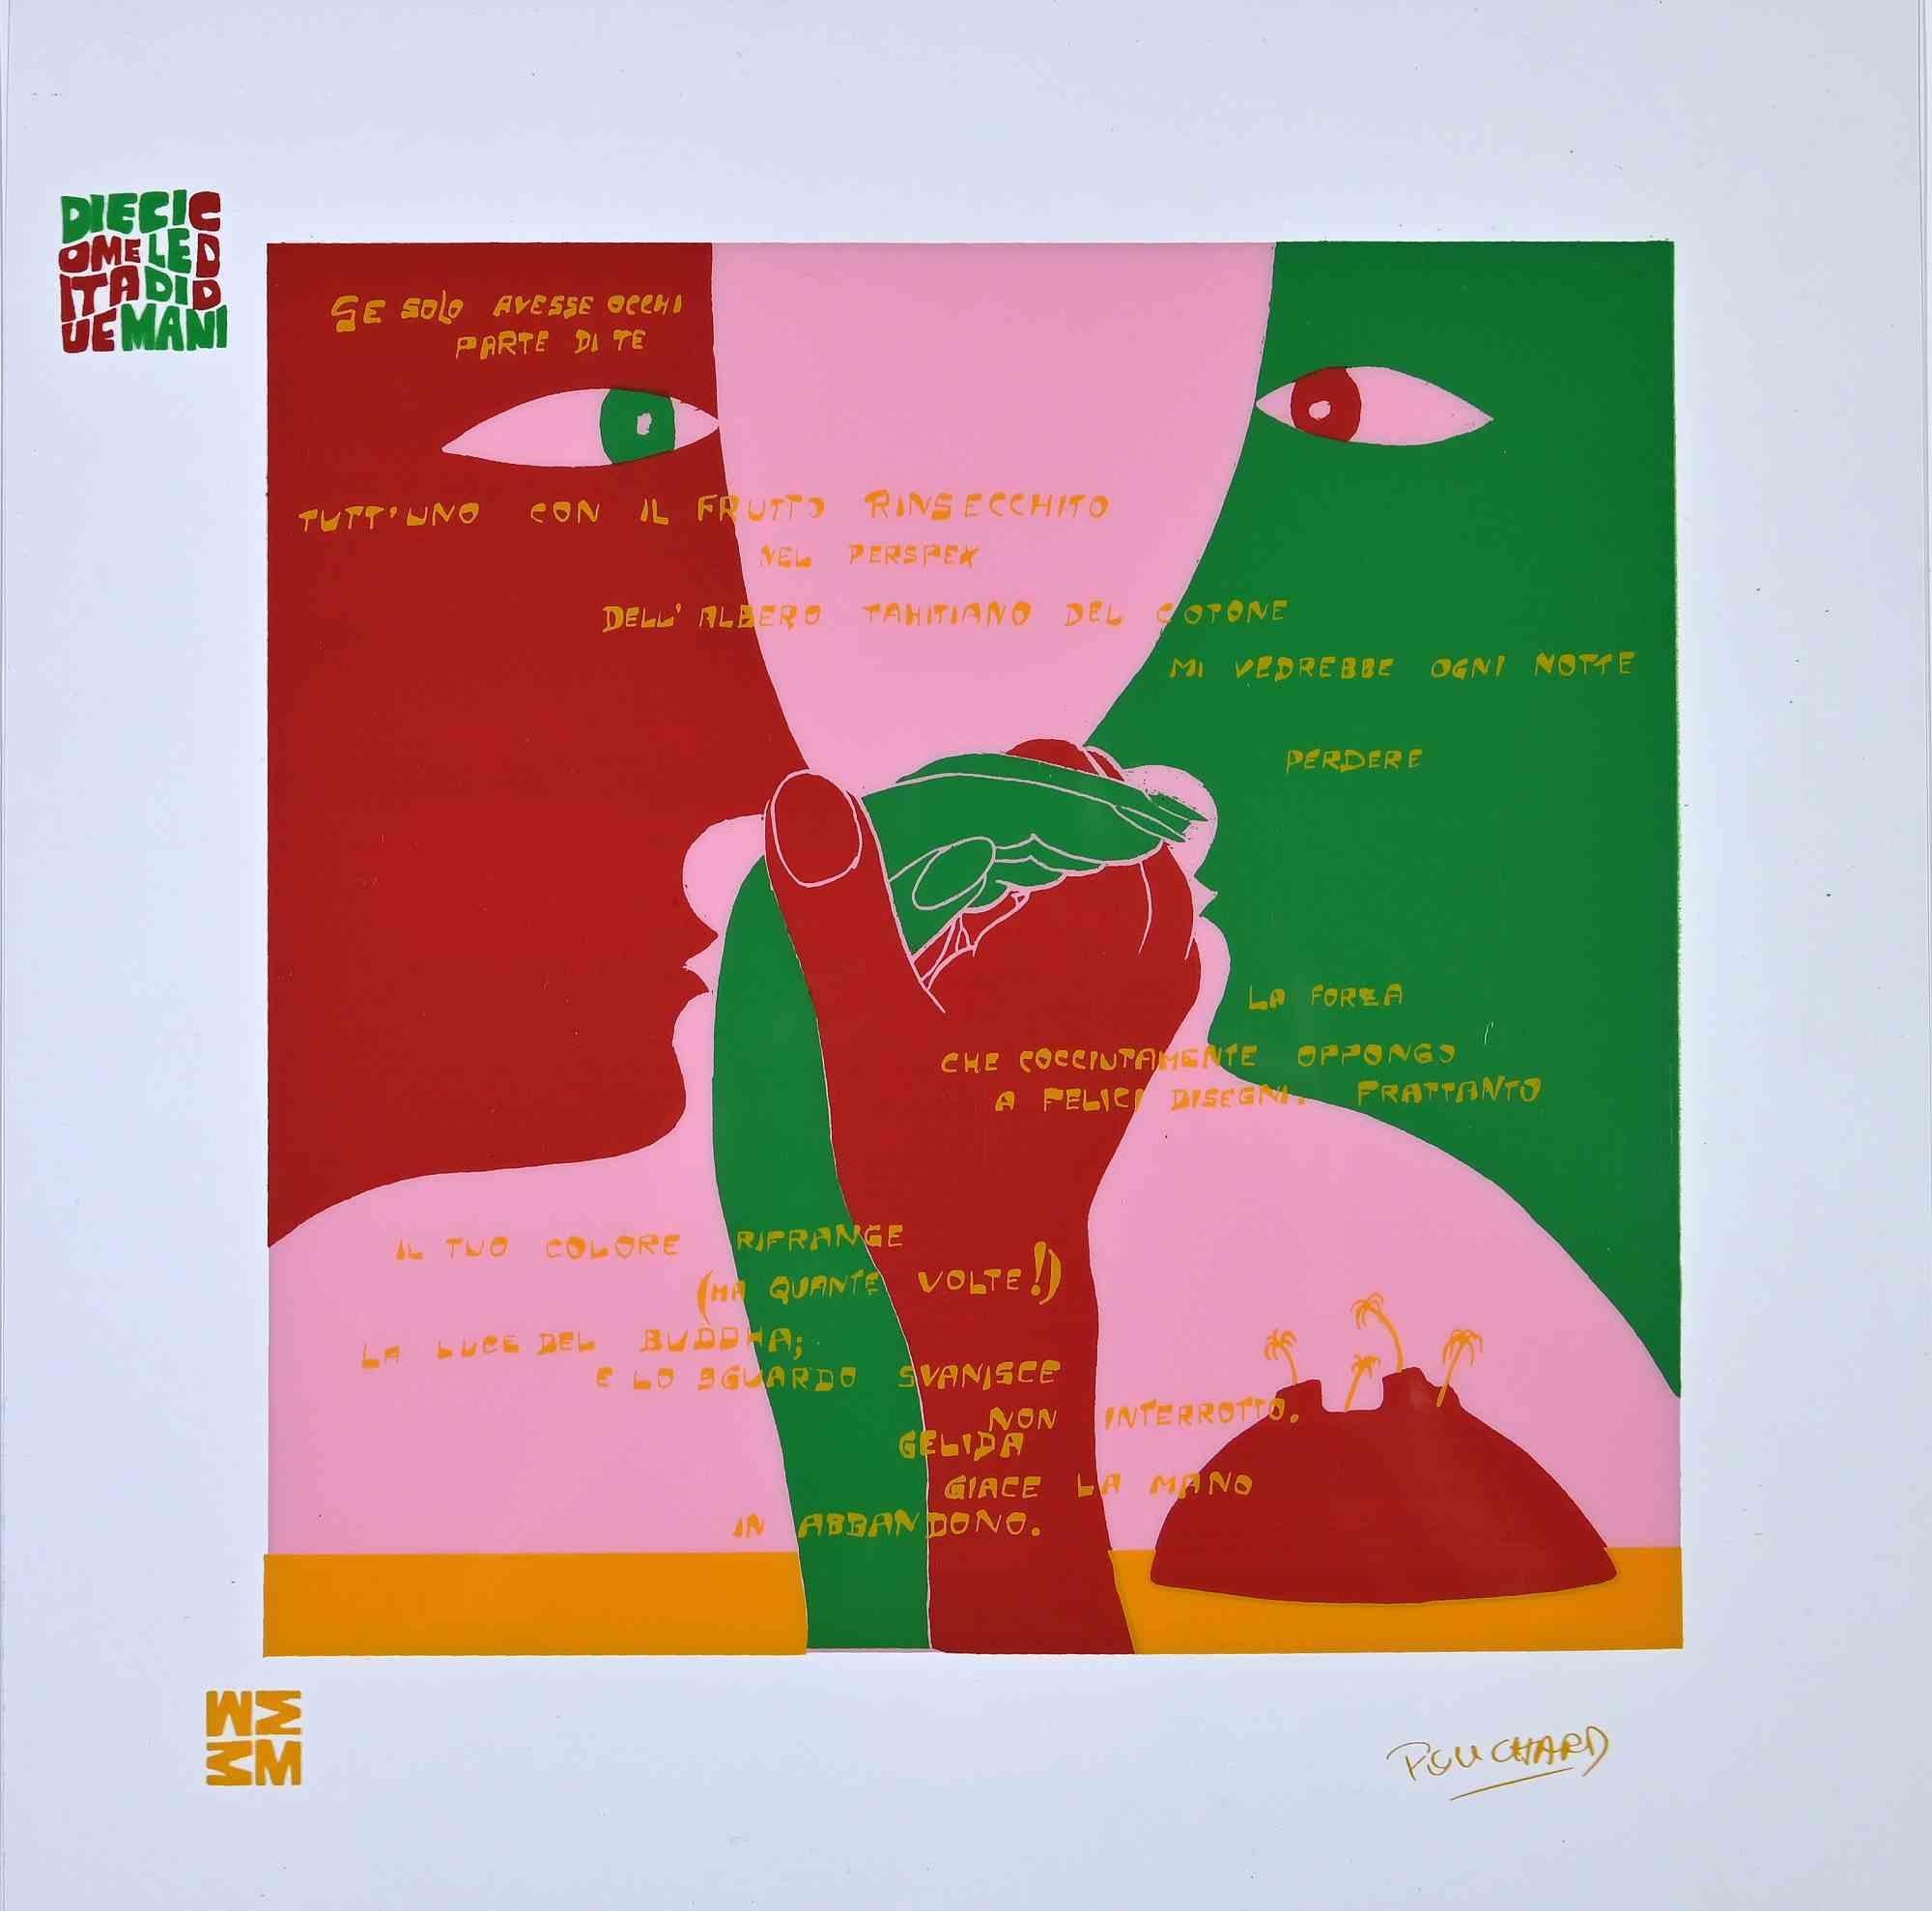 Diecicomeleditadiduemani est une suite de sérigraphies acétates réalisée en 1973 par l'artiste.  Ennio Pouchard  (1928).

Signé sur la plaque  en bas à droite.

Du porfolio " Diecicomeleditadiduemani ", contenant 10 sérigraphies sur acétates, avec